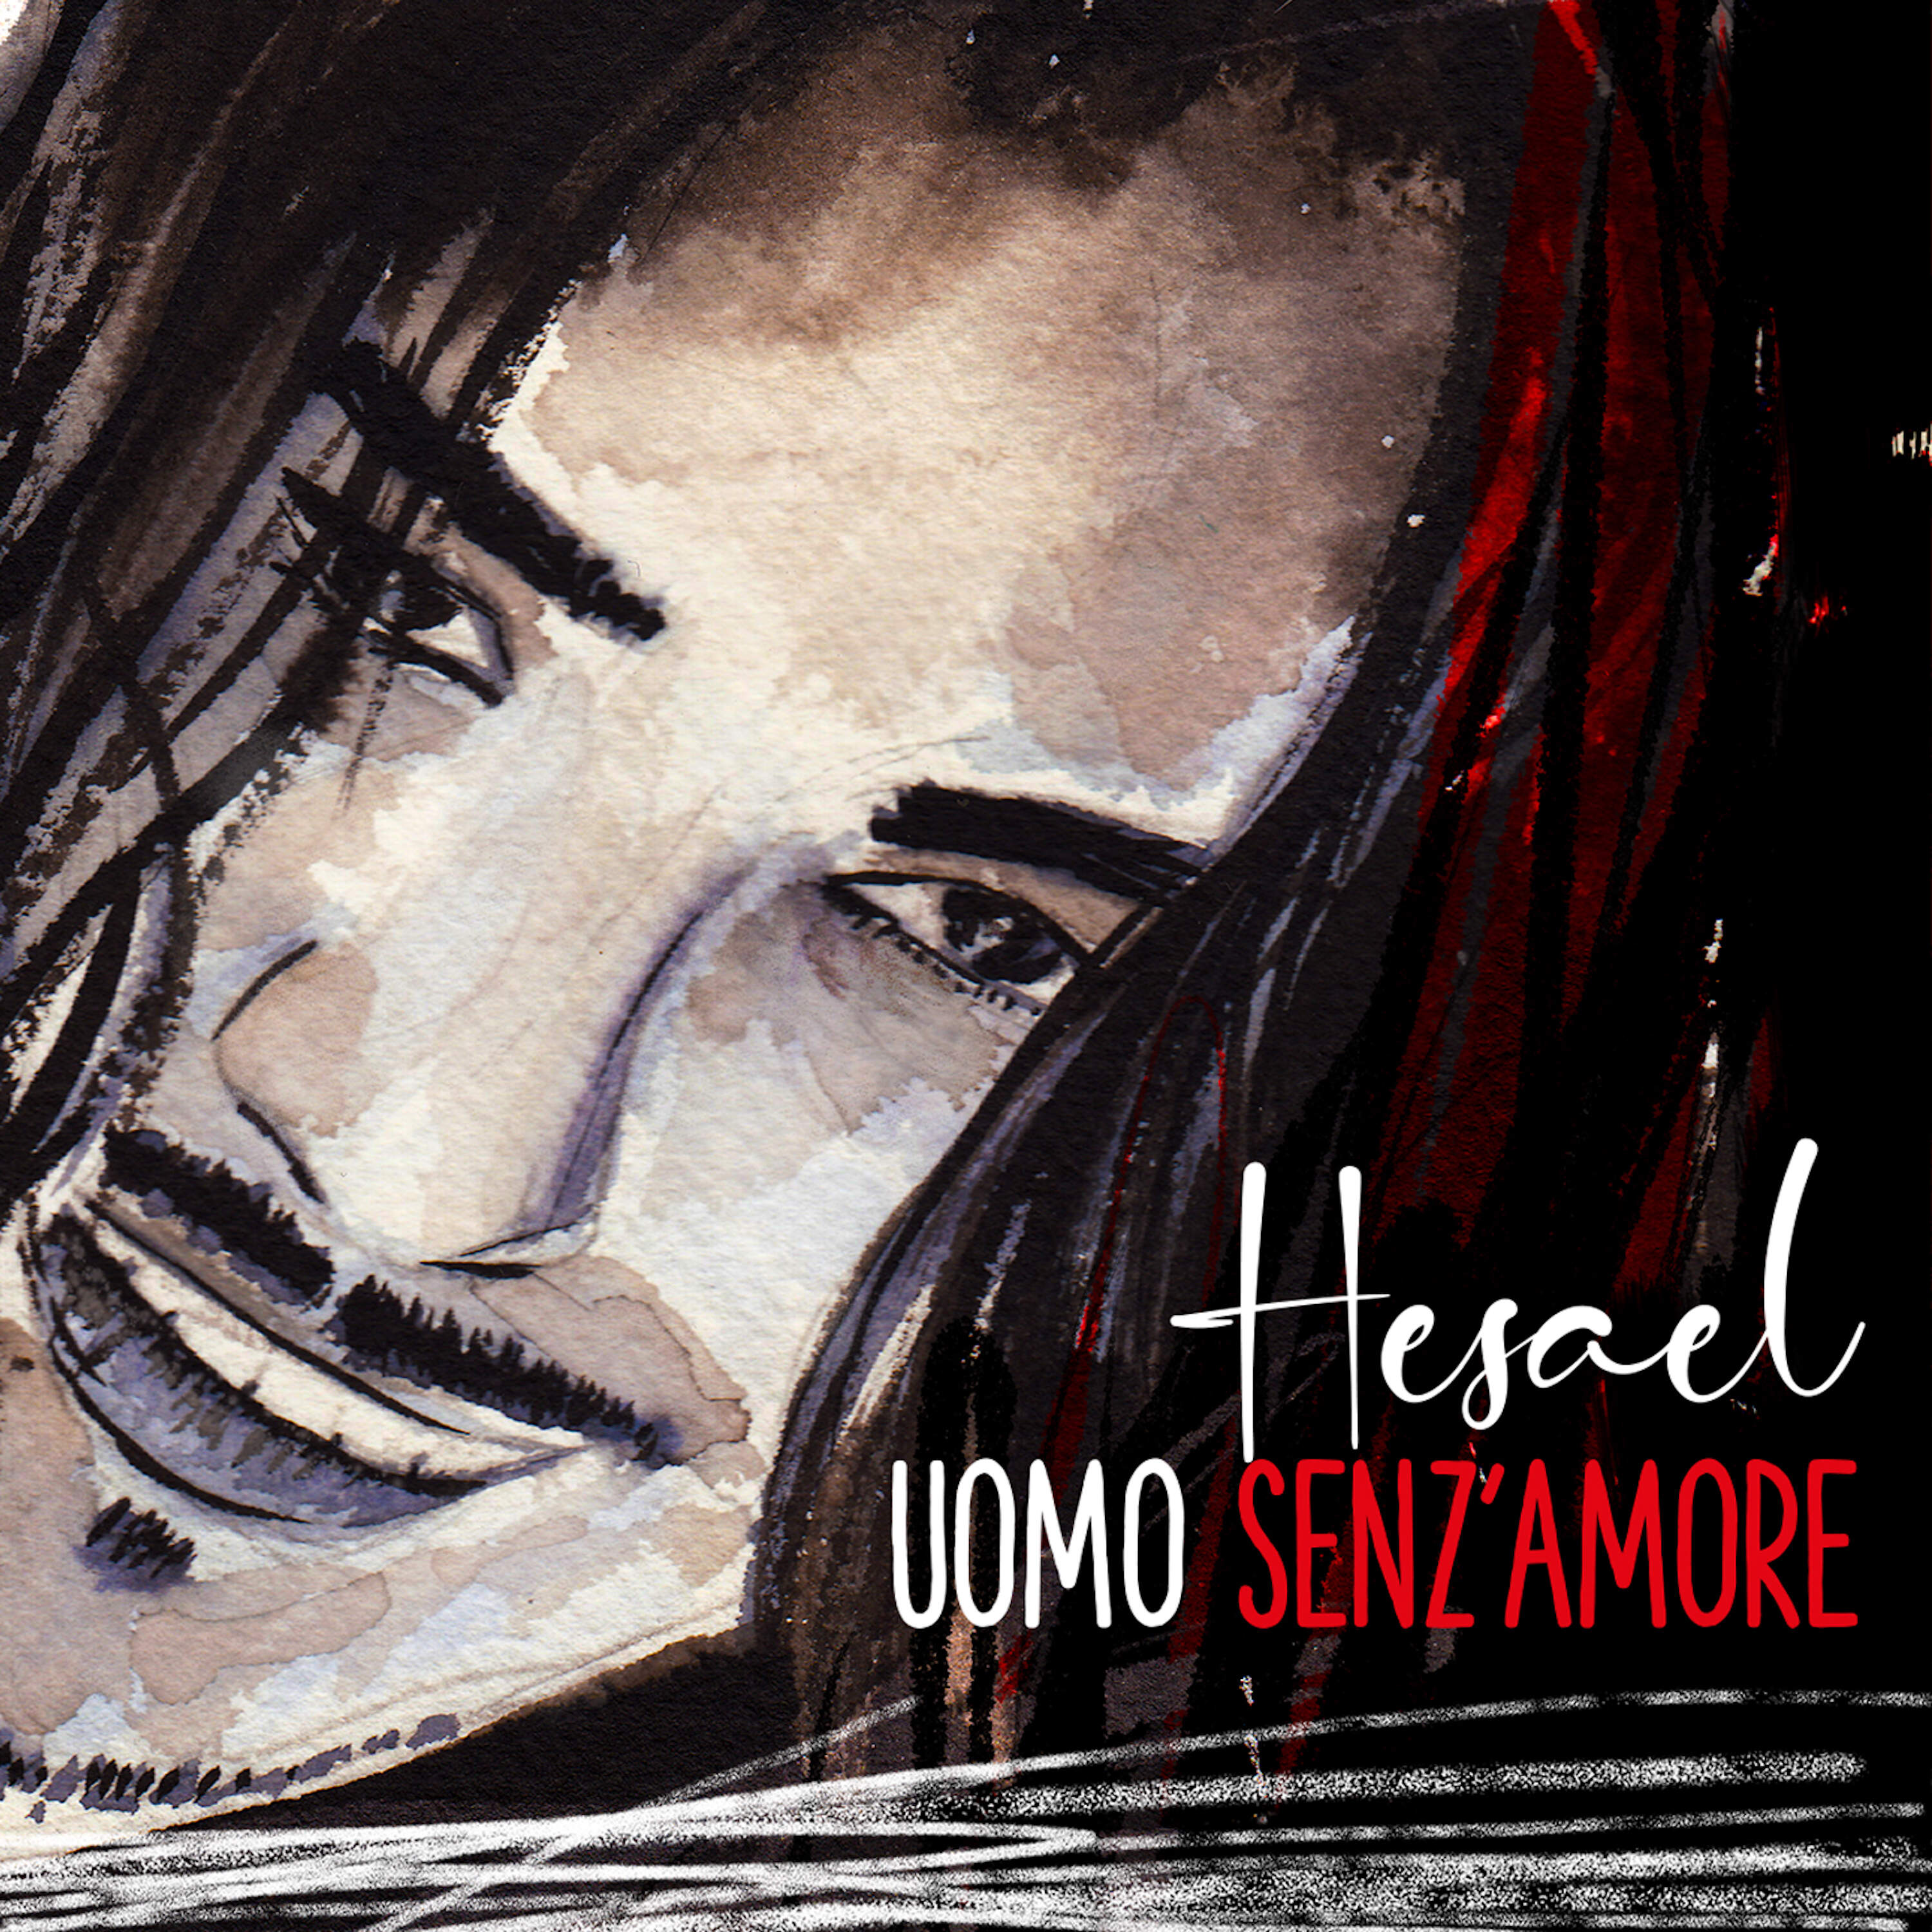 UOMO SENZ'AMORE è il nuovo singolo per il cantautore HESAEL!